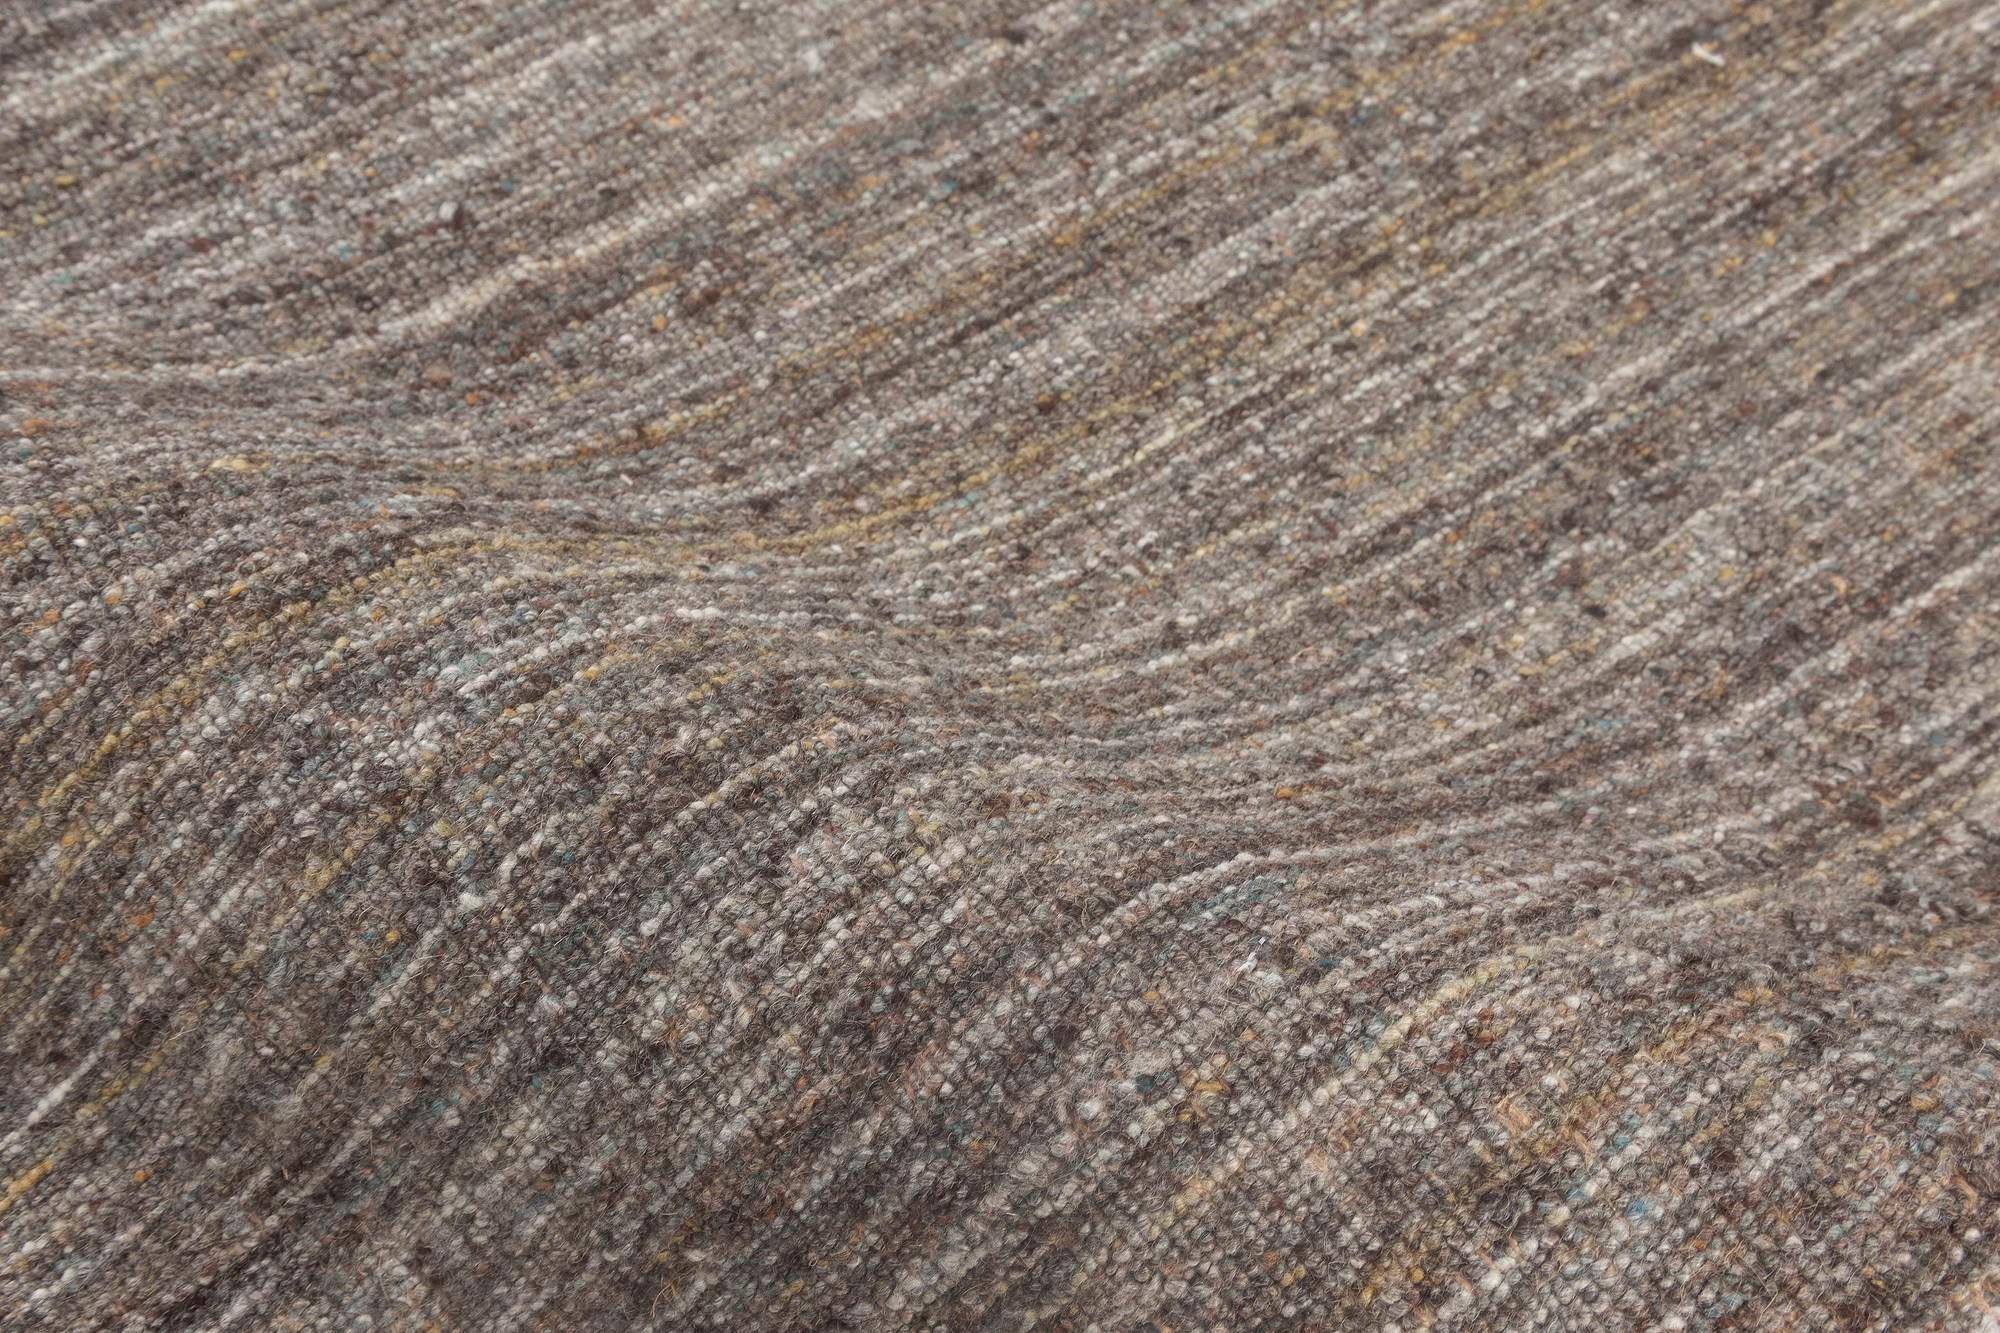 Moderner Teppich ohne Muster aus der Bauer Collection in Grau und Braun von Doris Leslie Blau.
Größe: 6'7